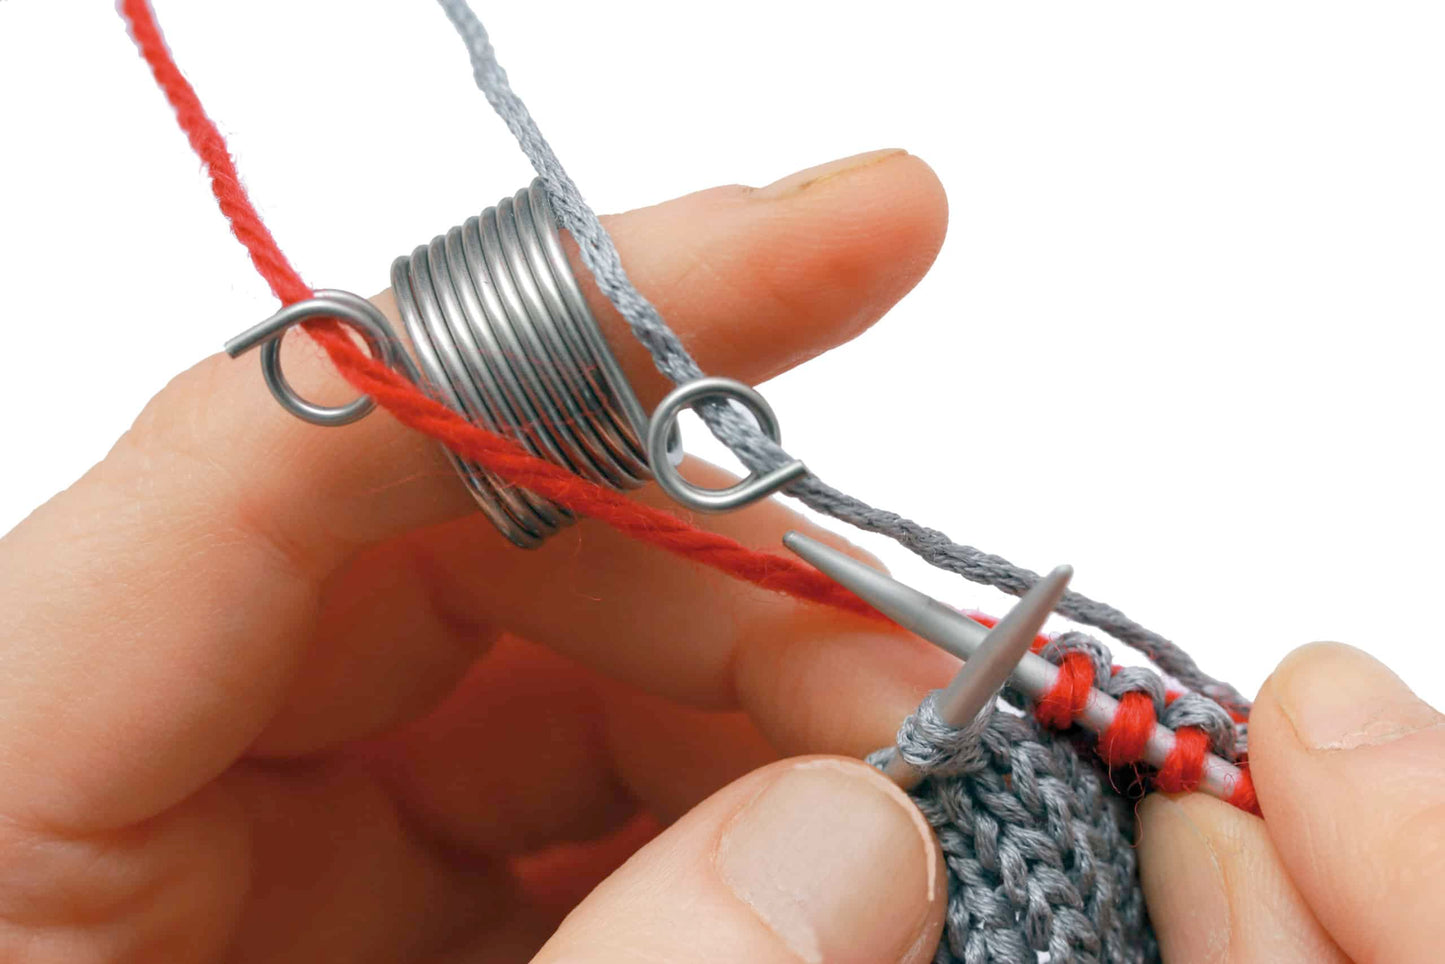 Addi Knitting thimble